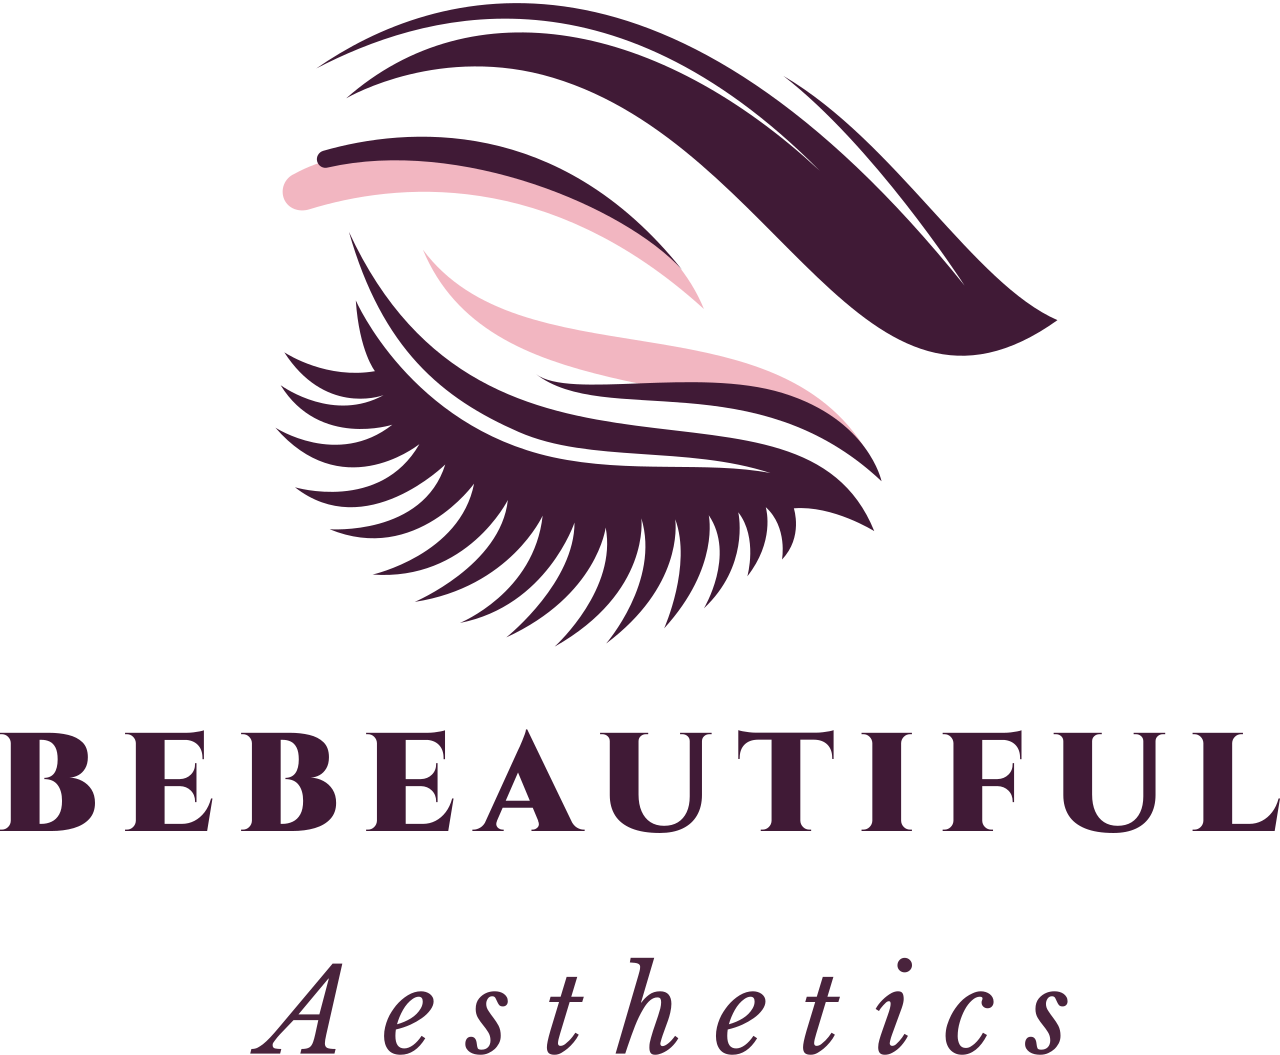 BeBeautiful 's logo